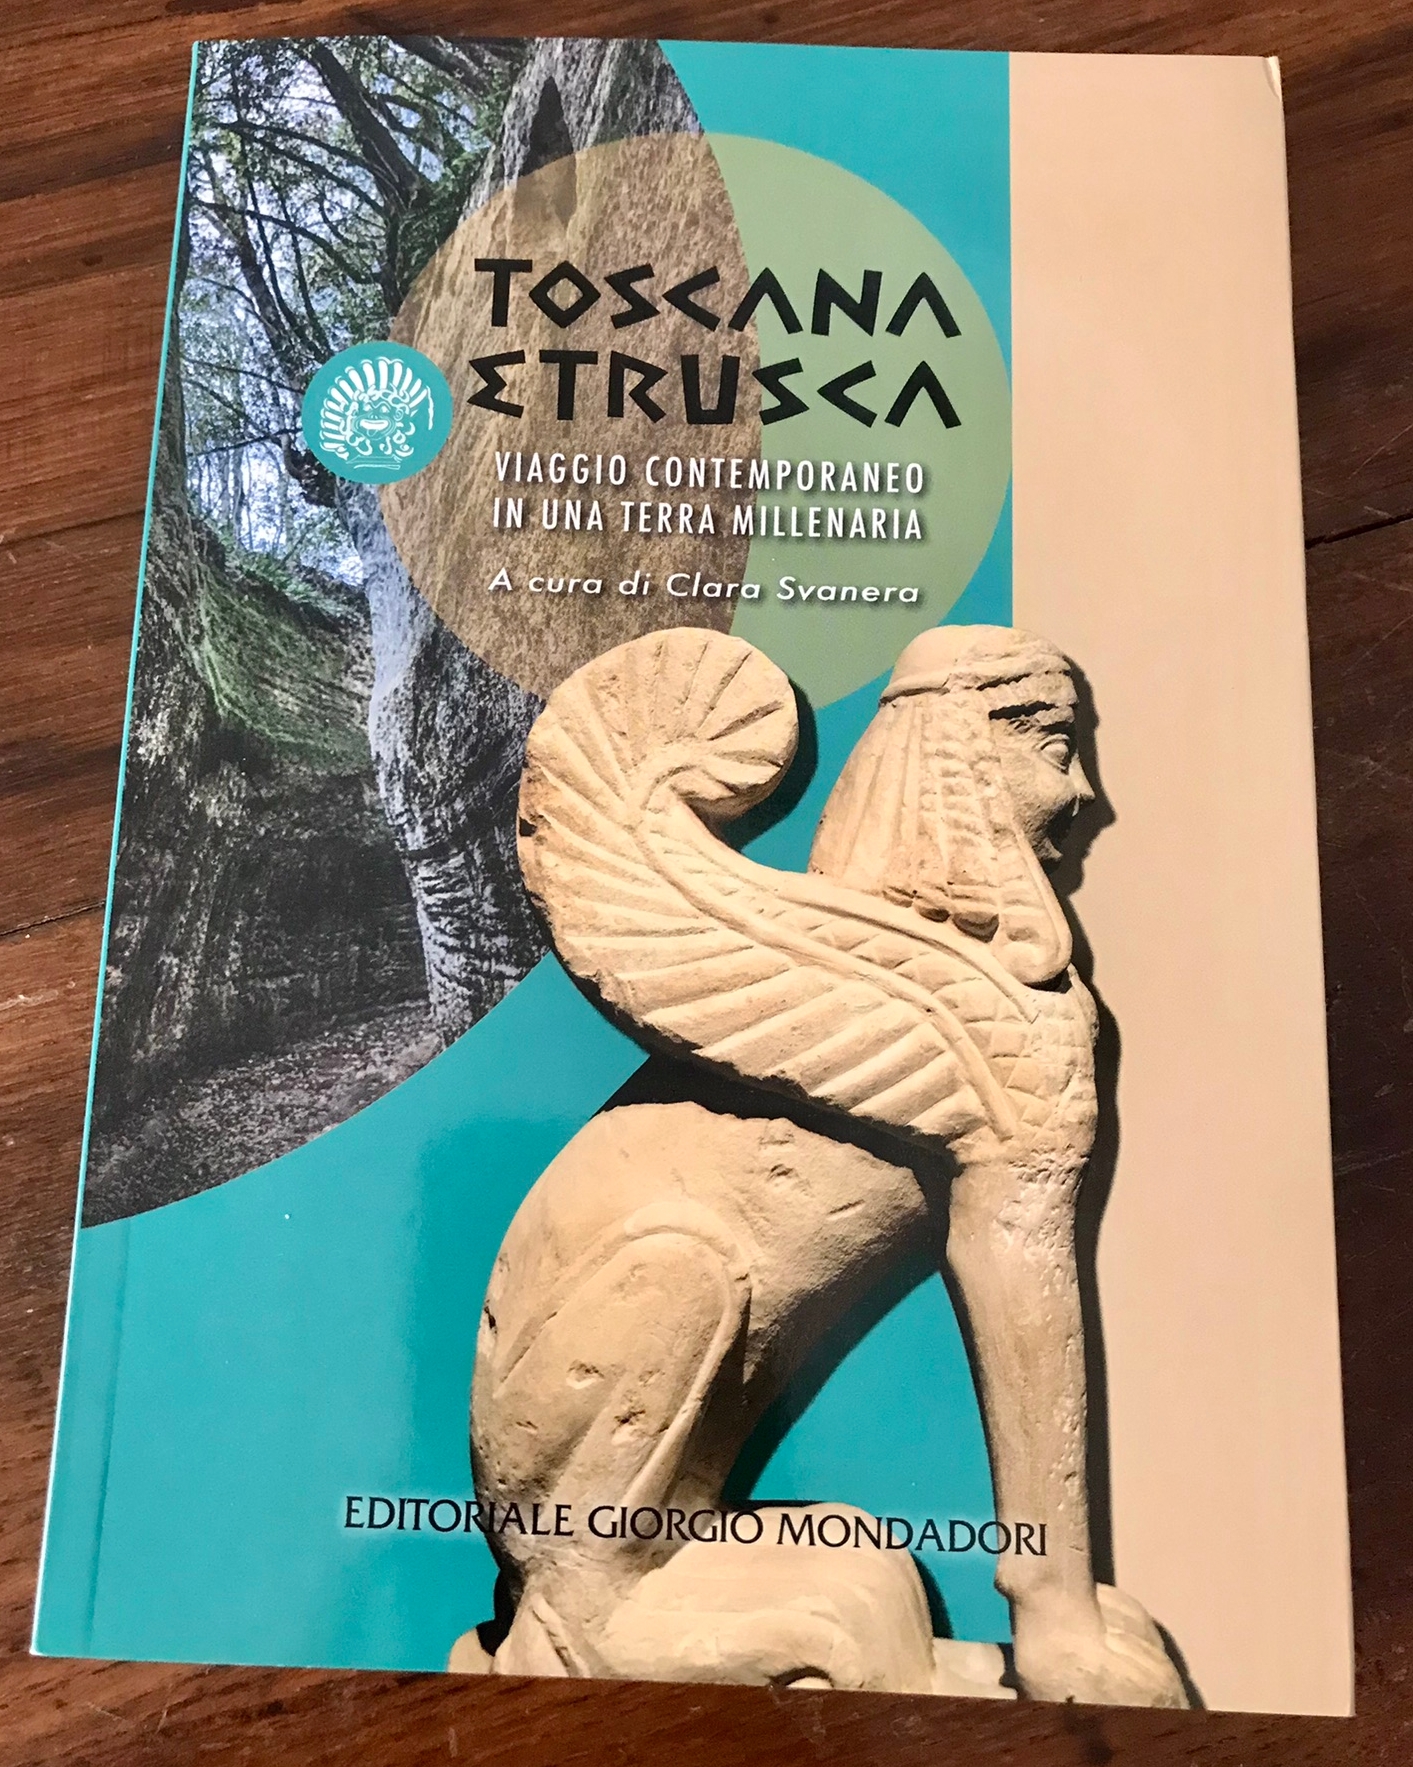 Presentata la guida “Toscana etrusca”: viaggio in una civiltà millenaria